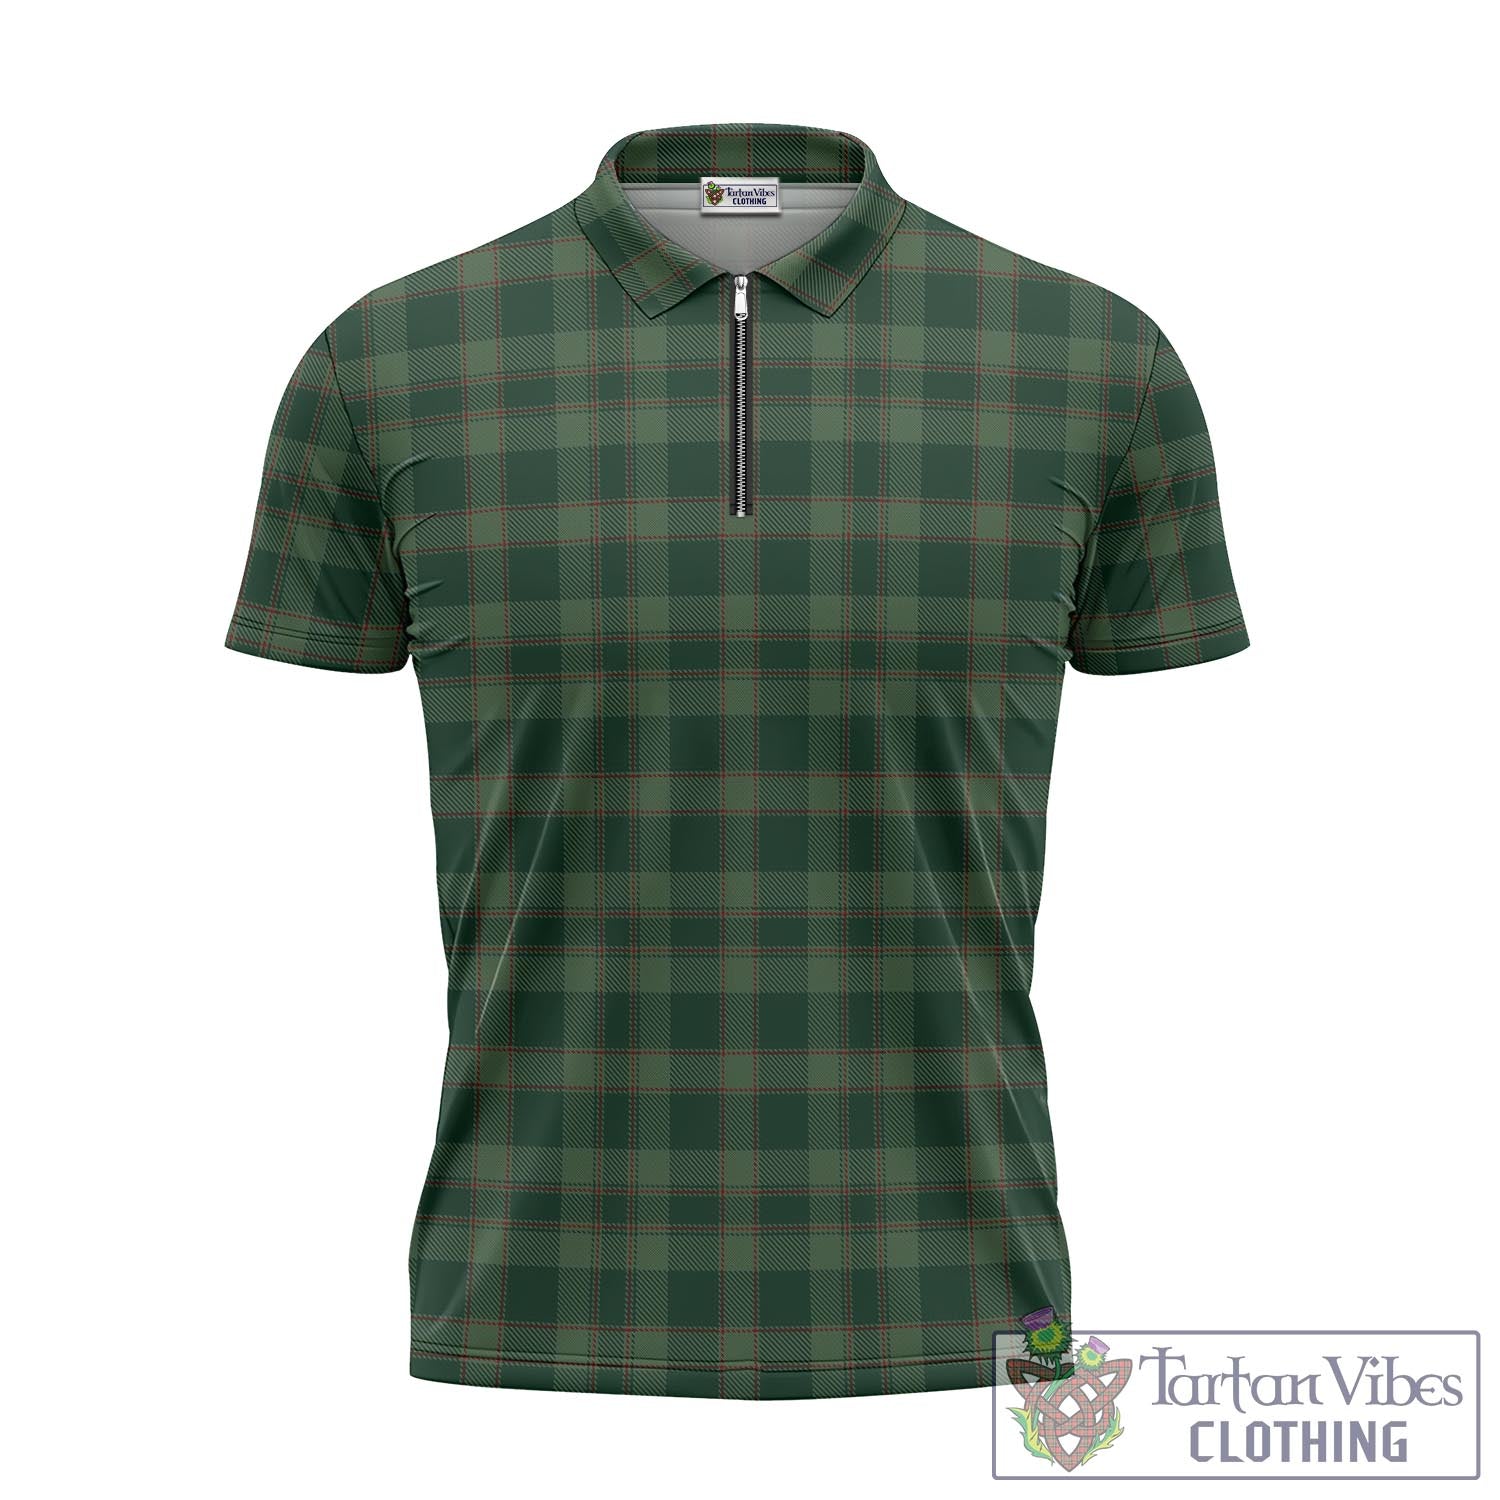 Tartan Vibes Clothing Donachie of Brockloch Hunting Tartan Zipper Polo Shirt